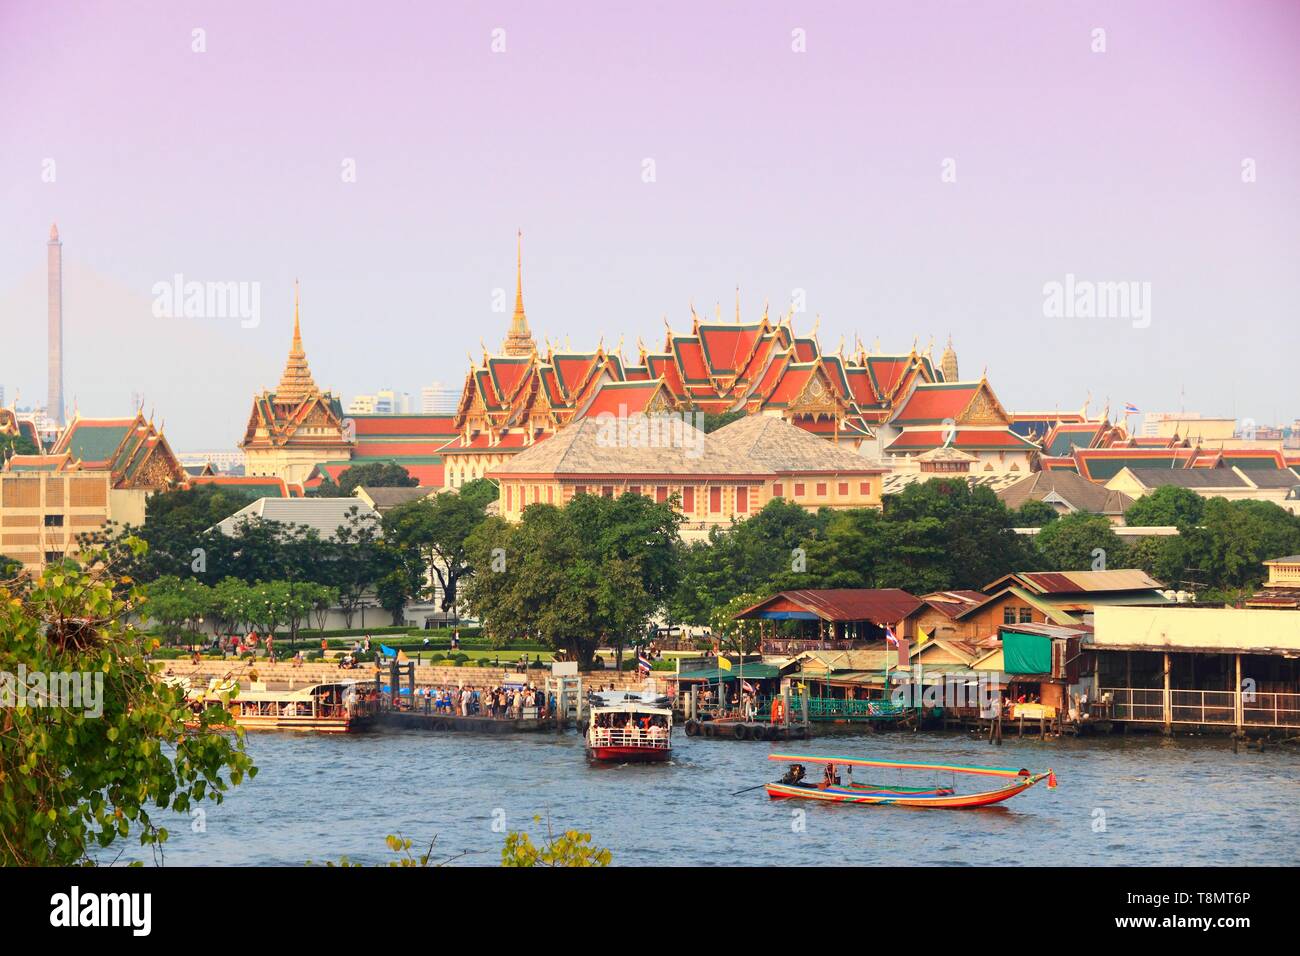 Bangkok, Thailand - Chao Phraya river and Grand Palace. Stock Photo